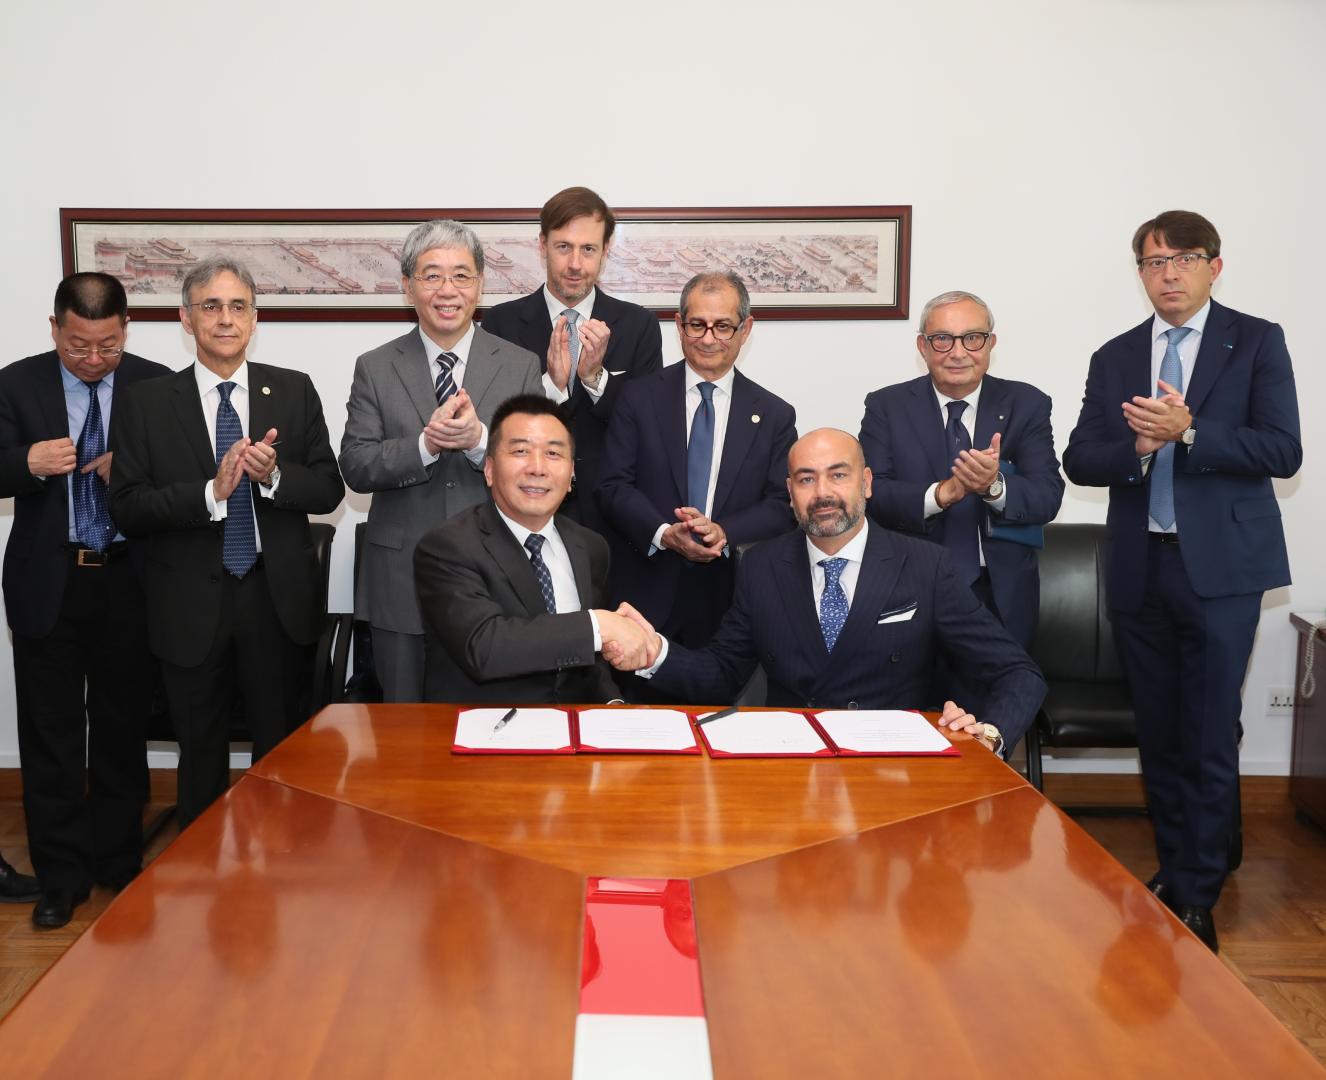 L’accordo di Fincantieri con il colosso di Stato China State Shipbuilding Corporation si allarga a tutti i segmenti delle costruzioni navali mercantili